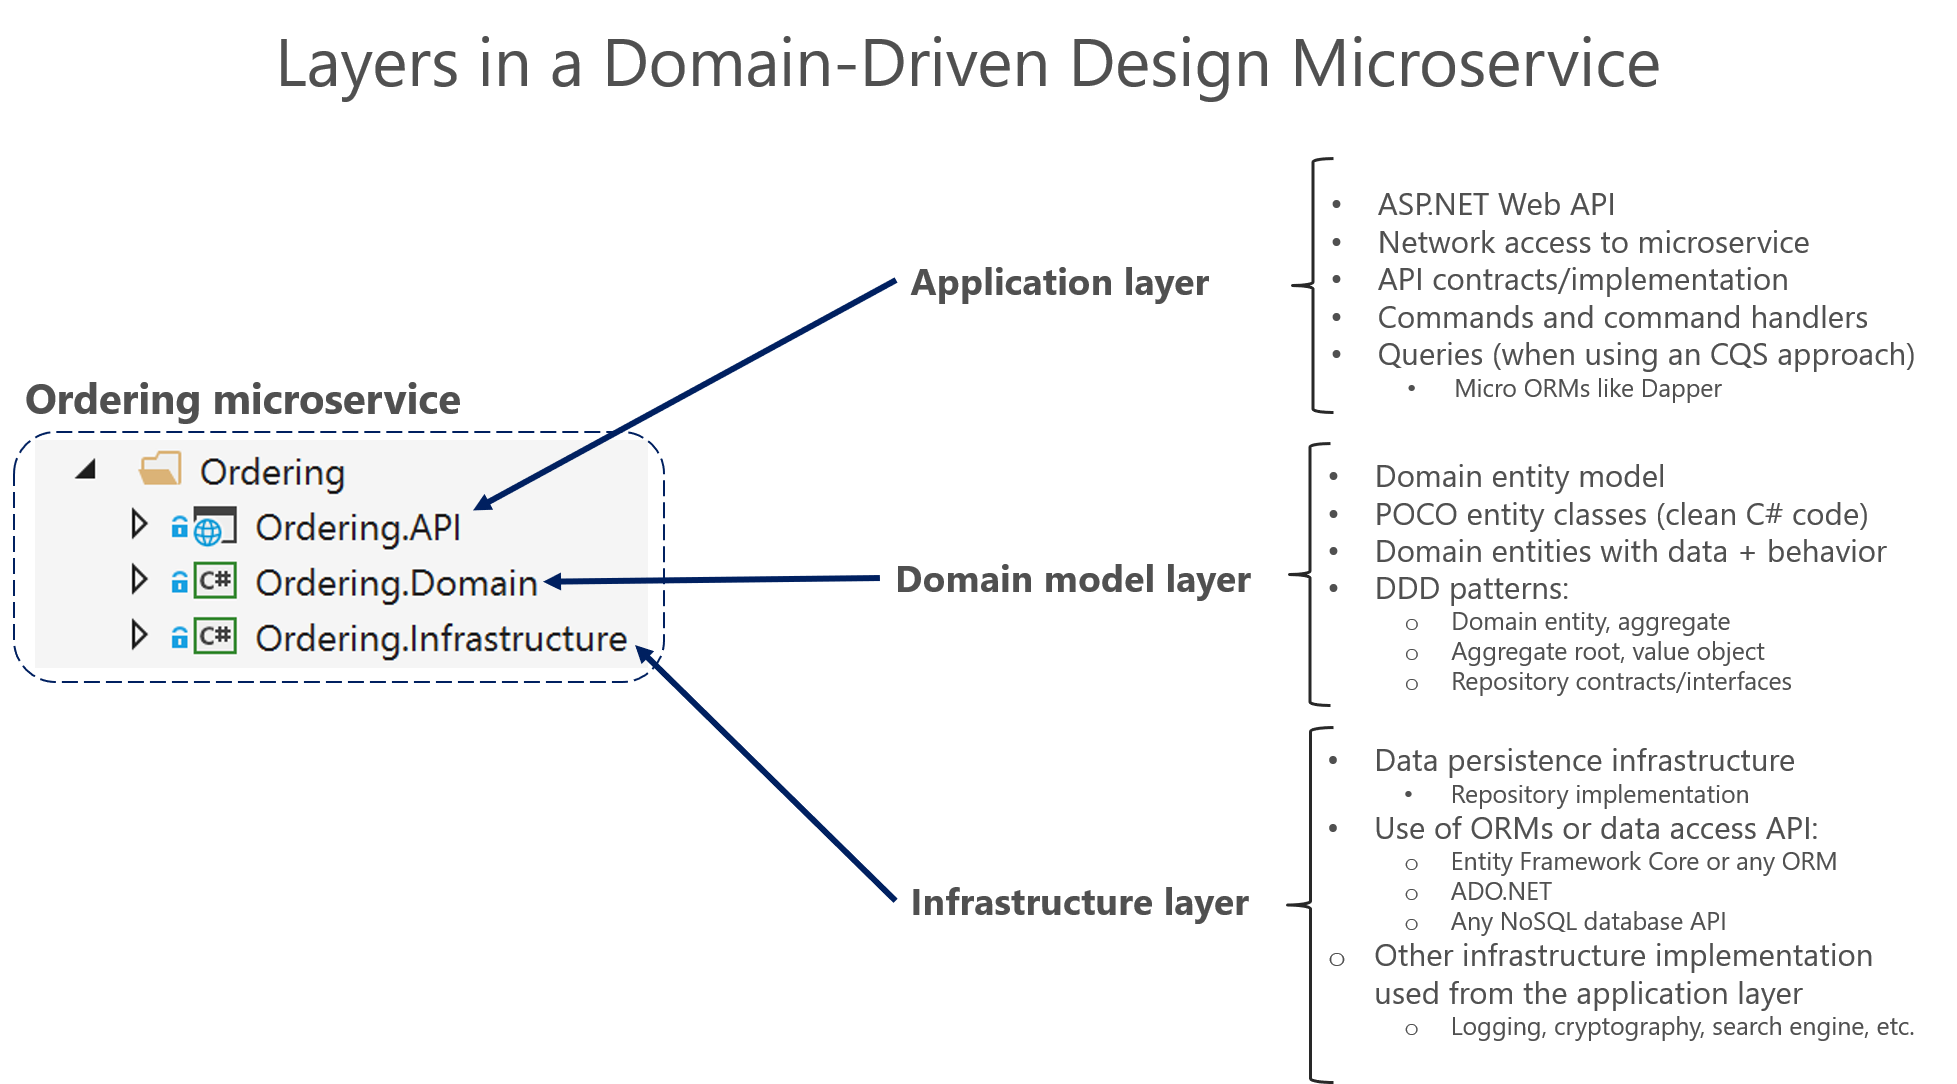 Diagramme montrant les couches d’un microservice de conception piloté par le domaine.